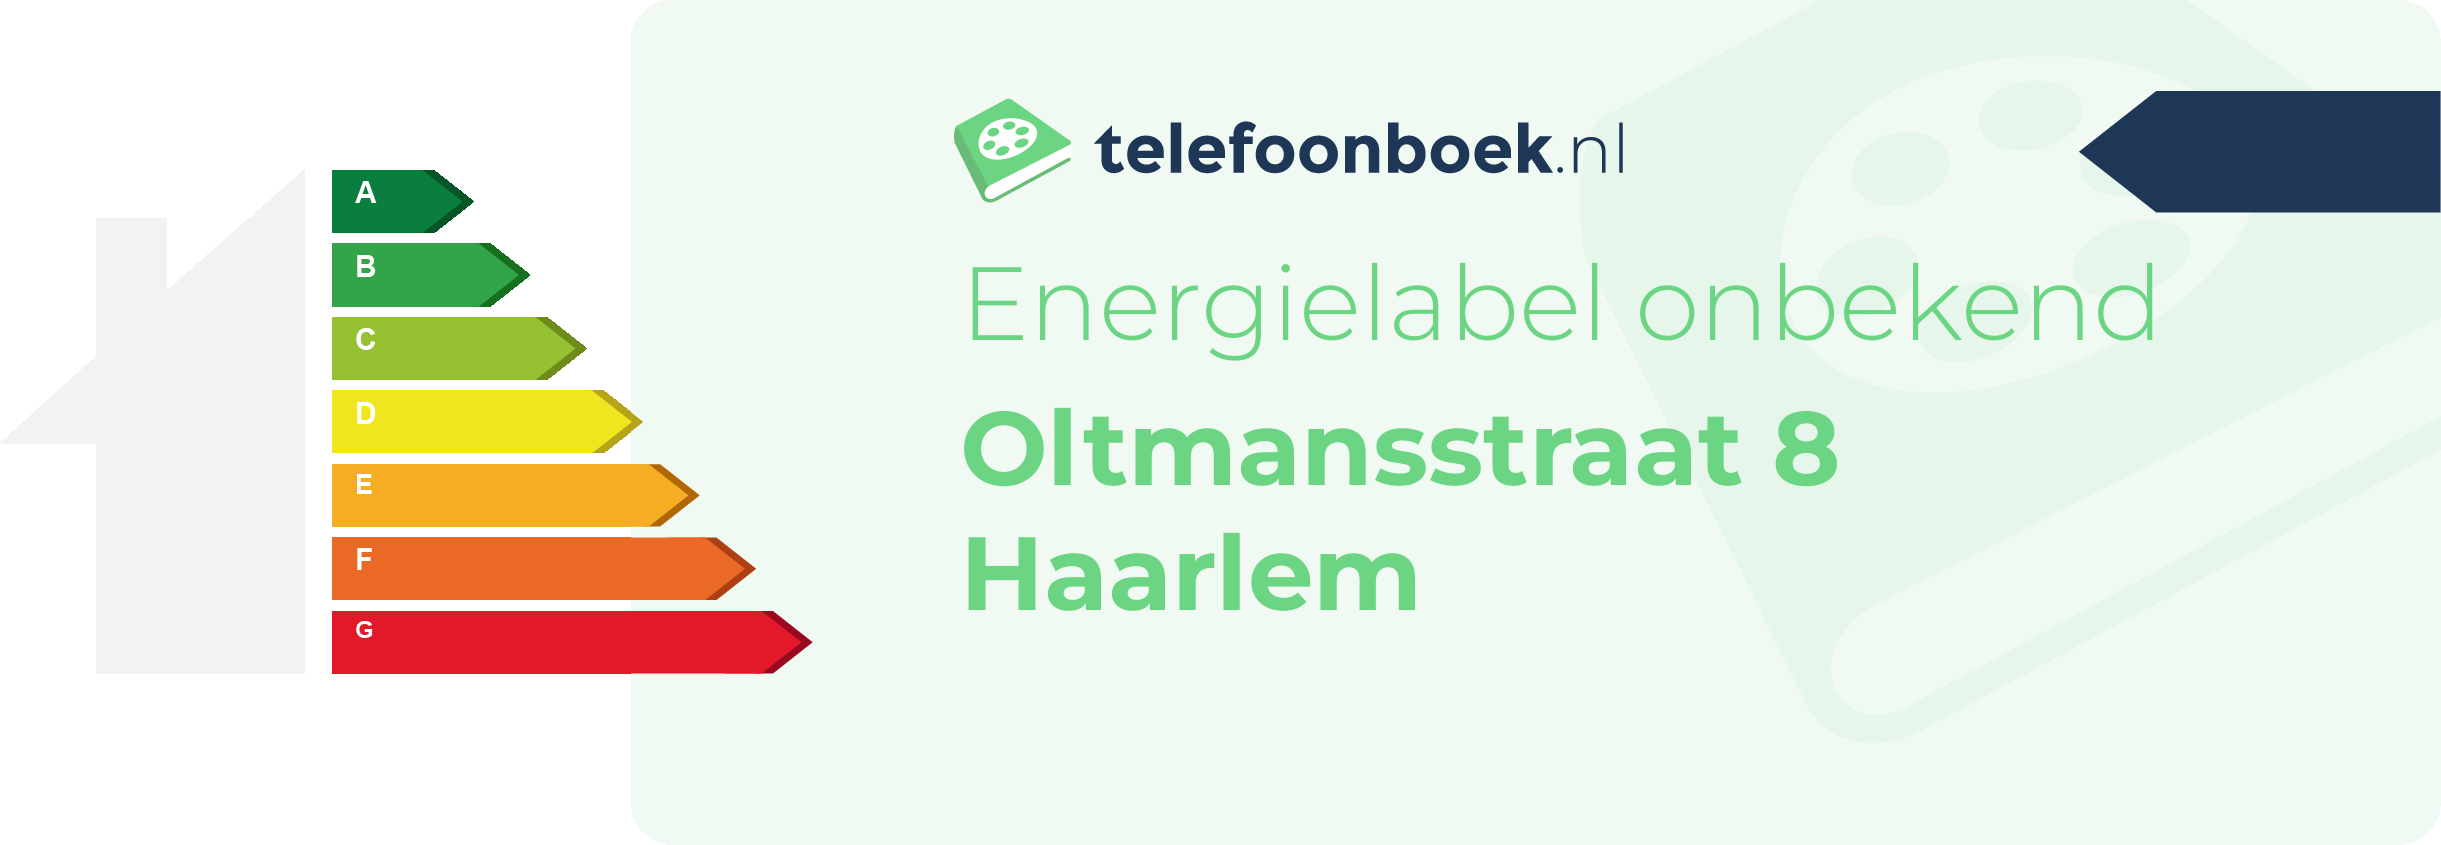 Energielabel Oltmansstraat 8 Haarlem